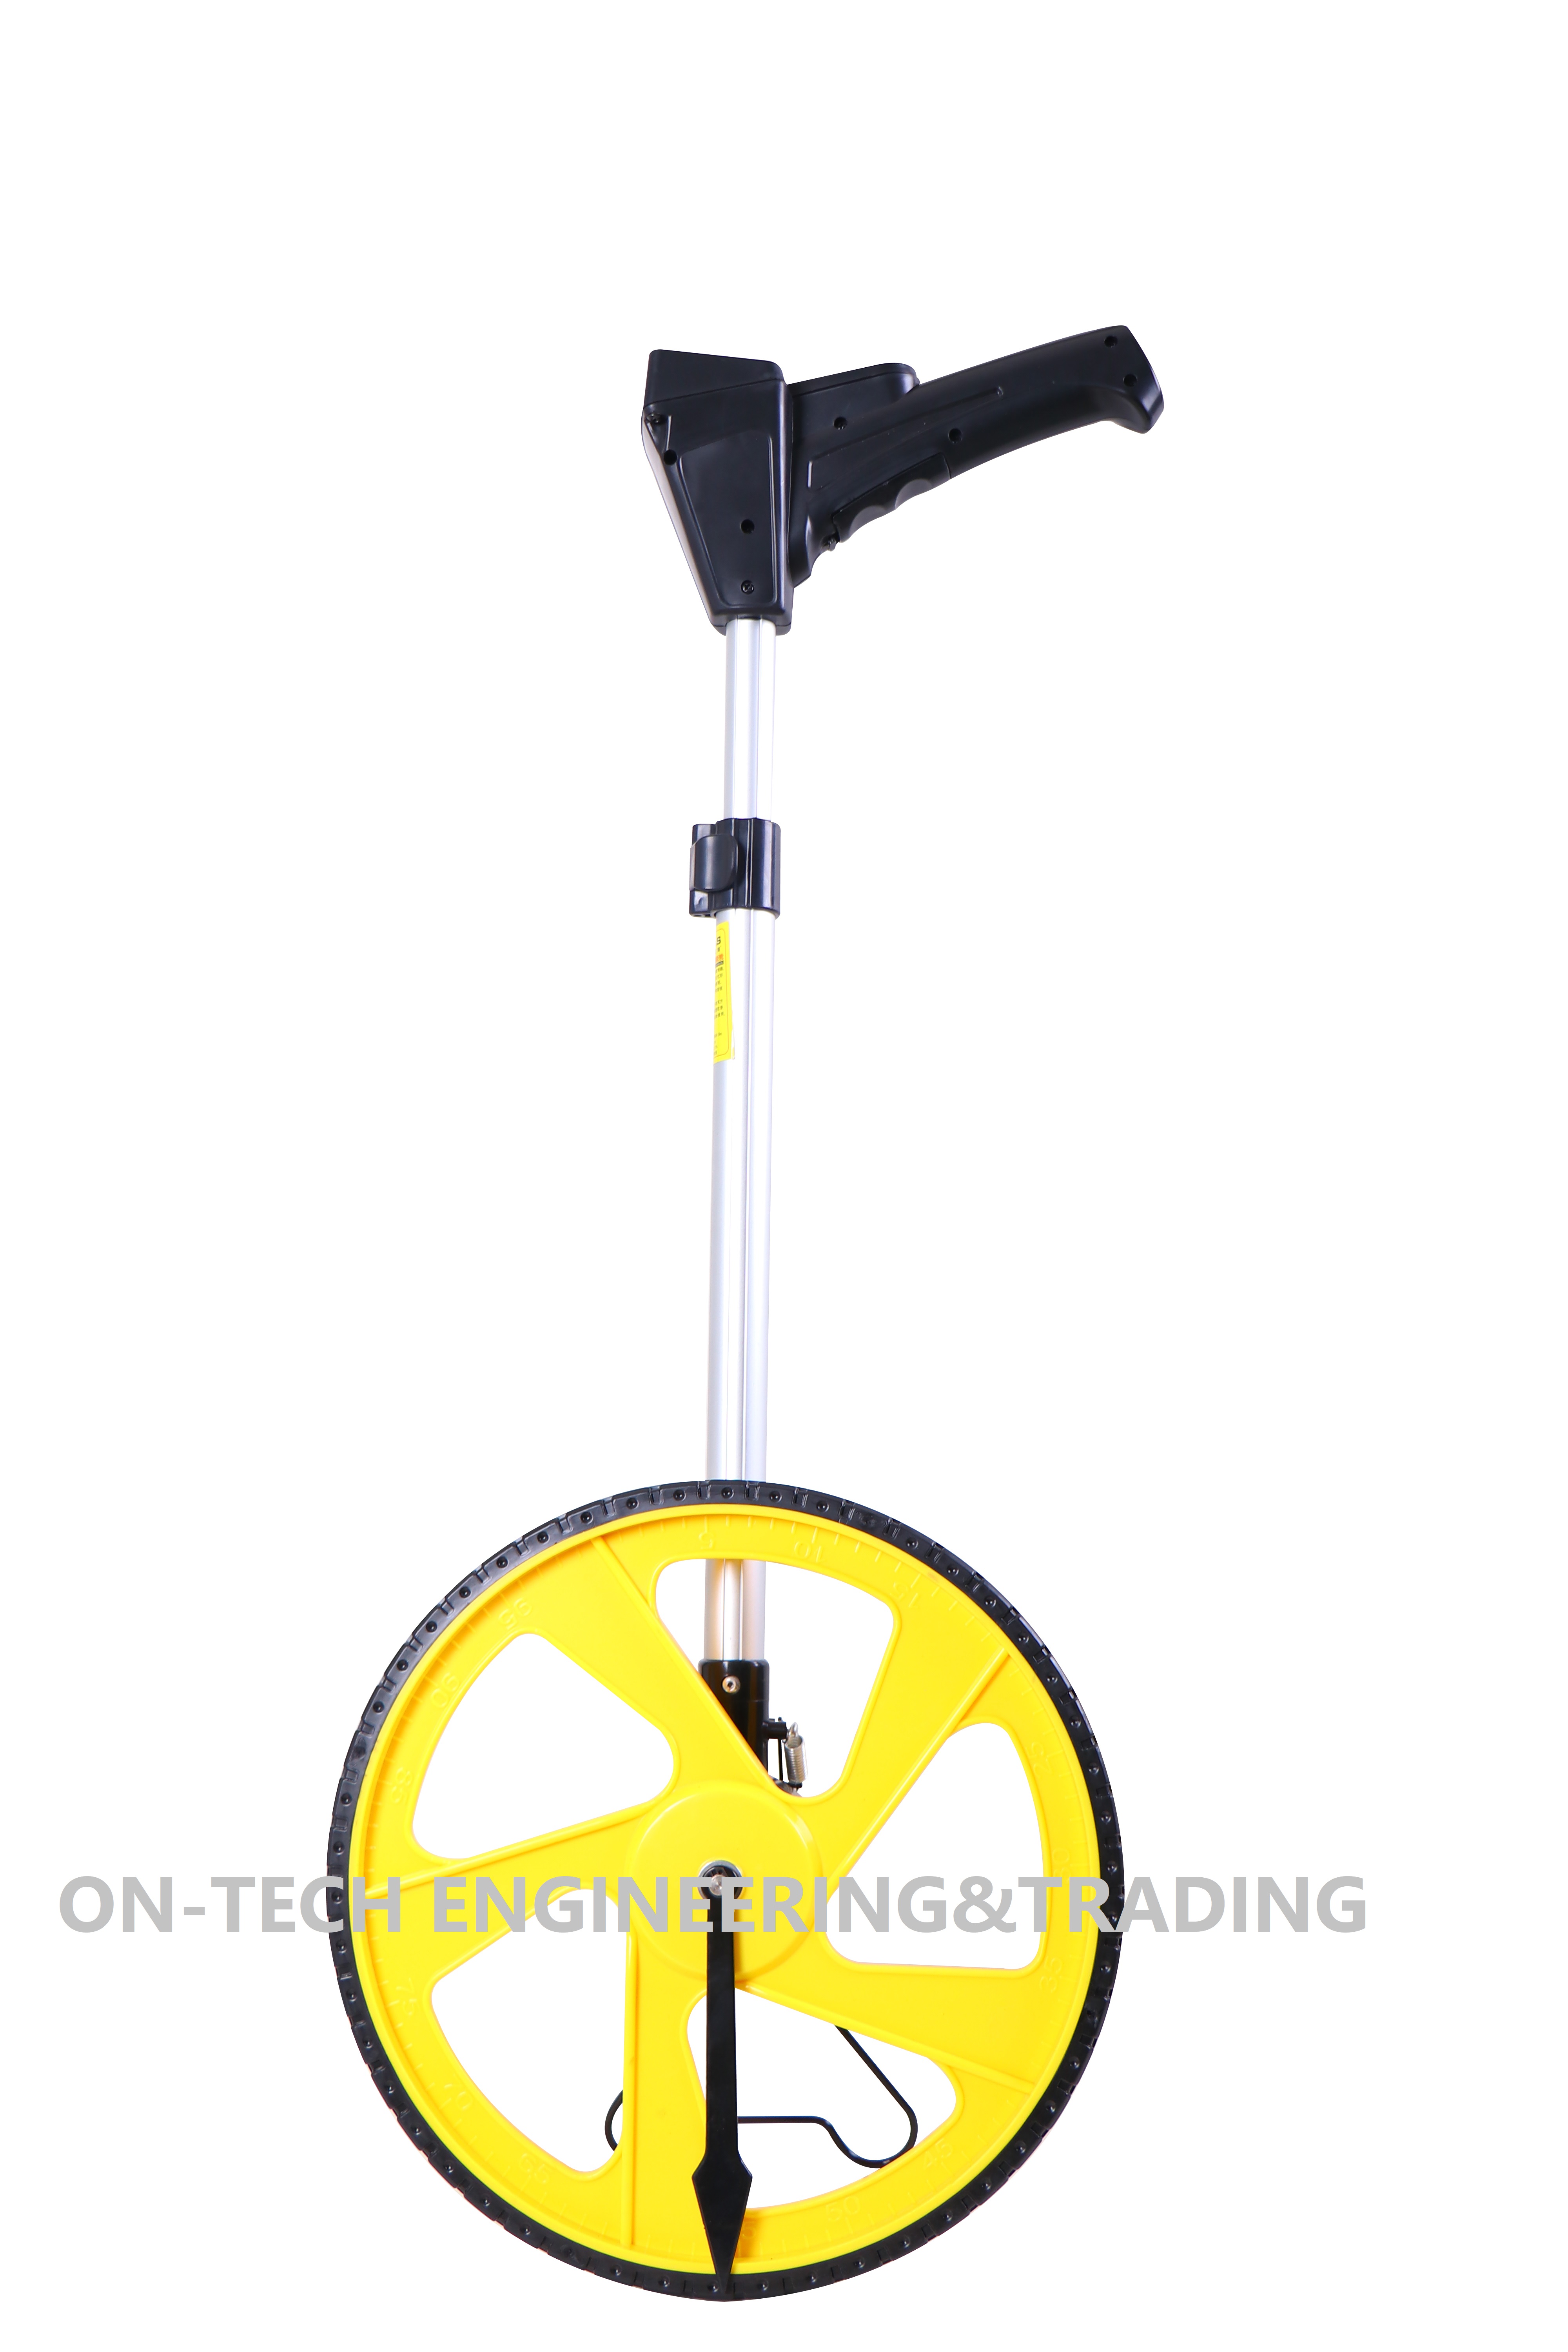 Measuring Wheel Large Wheel Handheld Distance Measuring Wheel 0~9999ft Measuring Wheel Digital Display Mechanical Measuring Wheel 